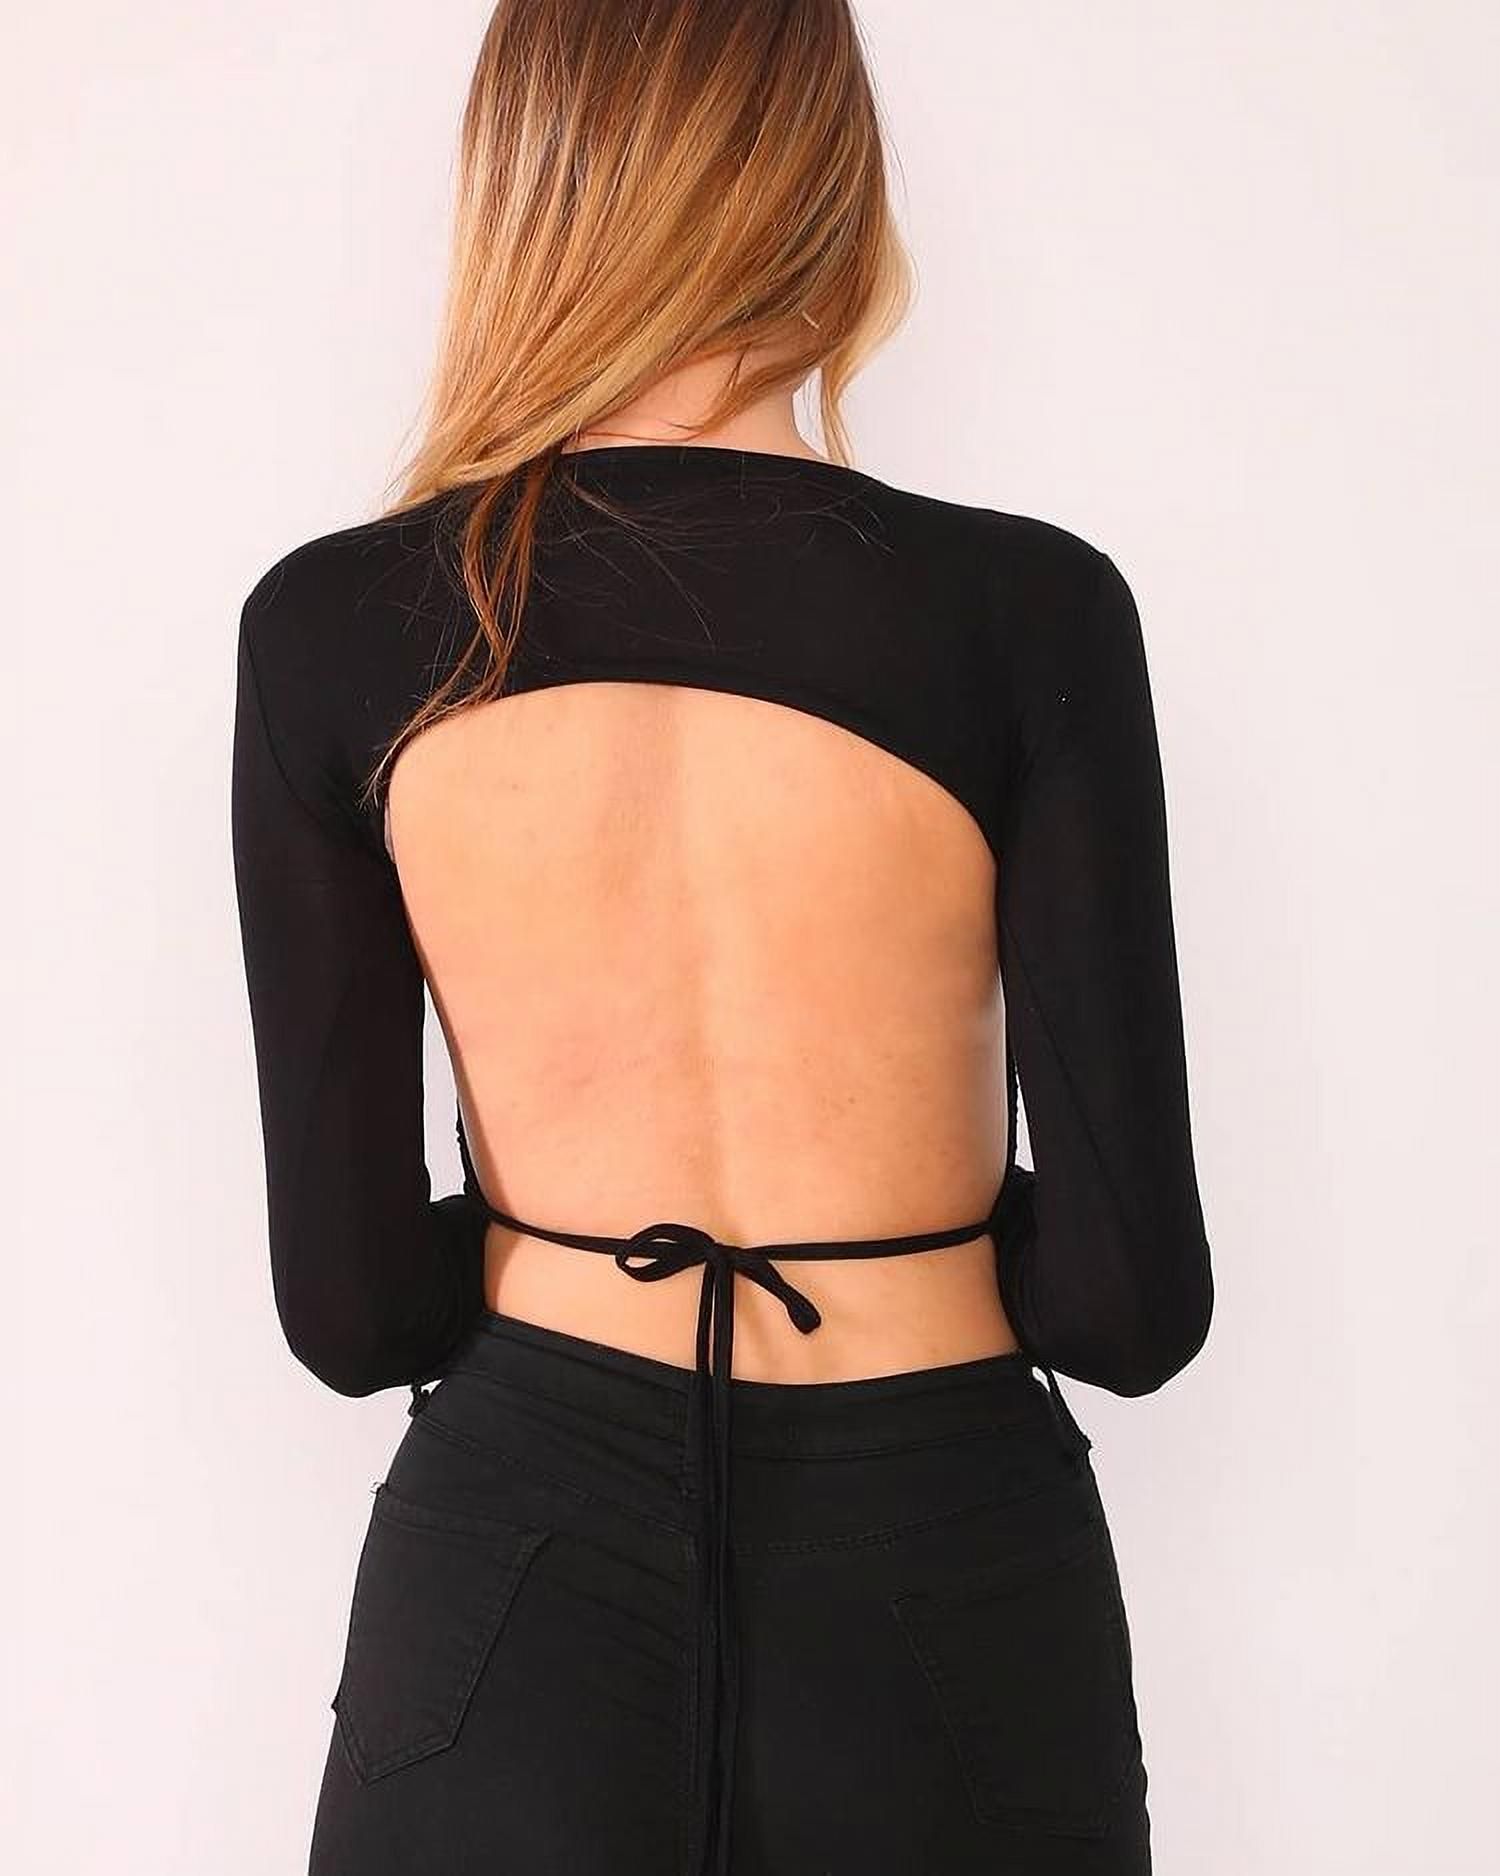 U-Wear Women’s Open Back Long Sleeve Blouse Top, Black, Small | Walmart (US)